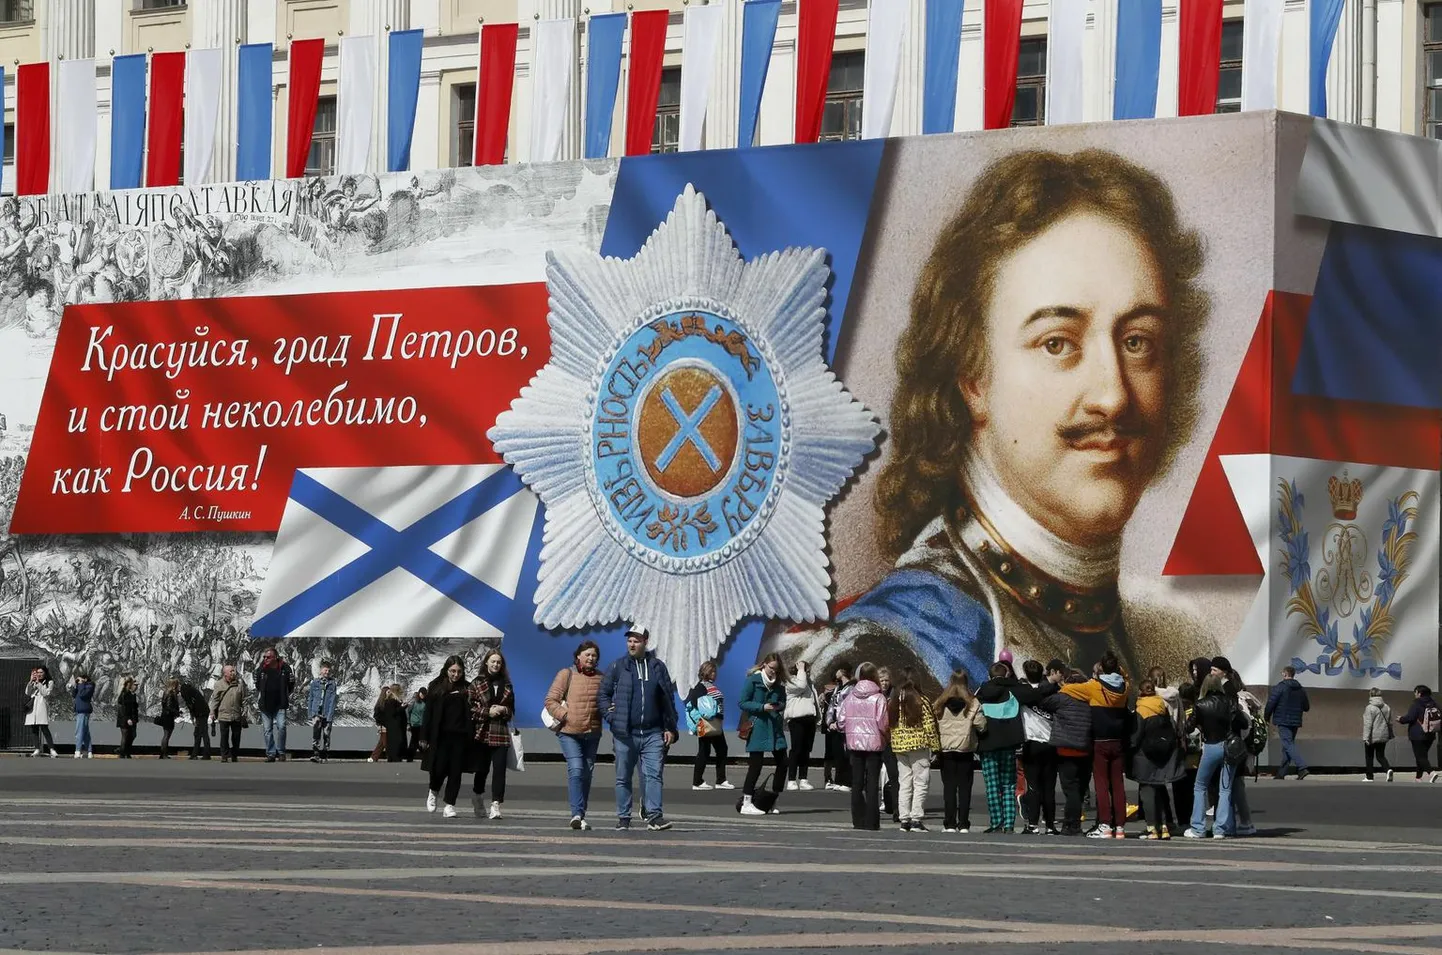 Гигантский рекламный баннер с изображением царя Петра I, основателя прекрасного города, был установлен в мае к 319-летию со дня основания Санкт-Петербурга.